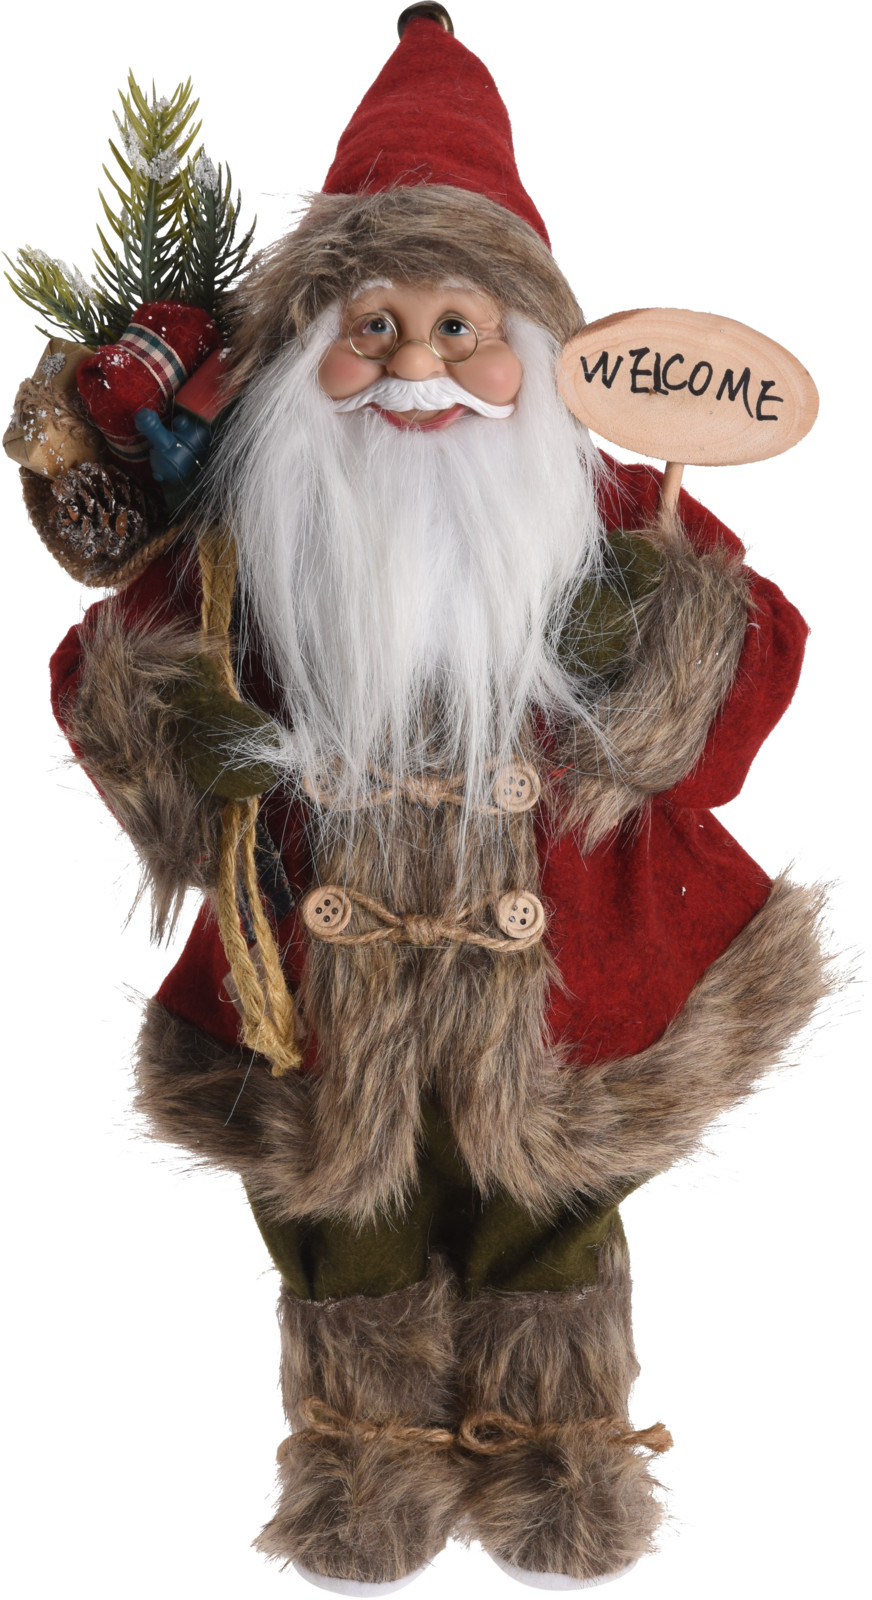 Kerstman Deco Figuur 37 cm hoog rood/grijze jas met cadeauzakje